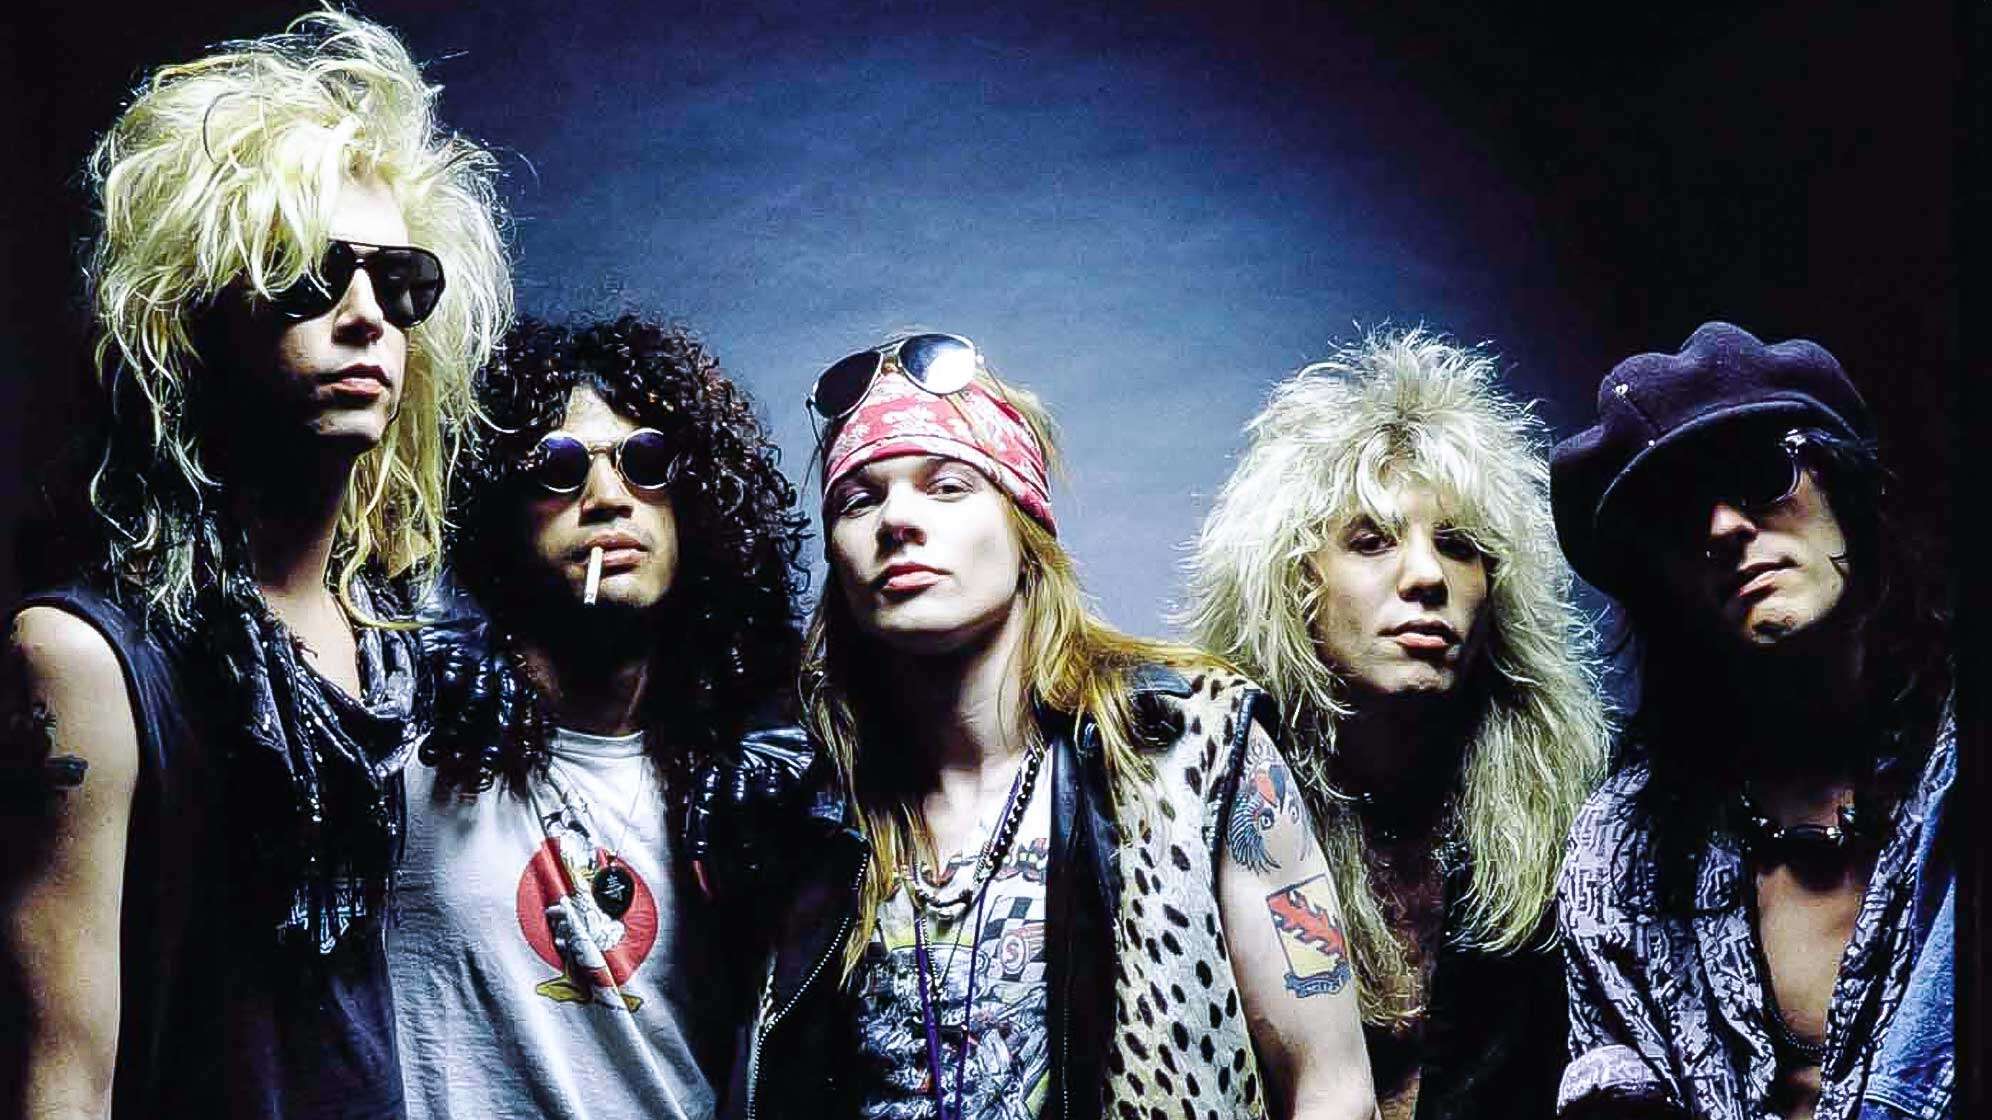 Ein Bandfoto von Guns N' Roses aus dem Jahr 1987 - von links nach rechts: Duff McKagan, Slash, Axl Rose, Steven Adler und Izzy Stradlin.